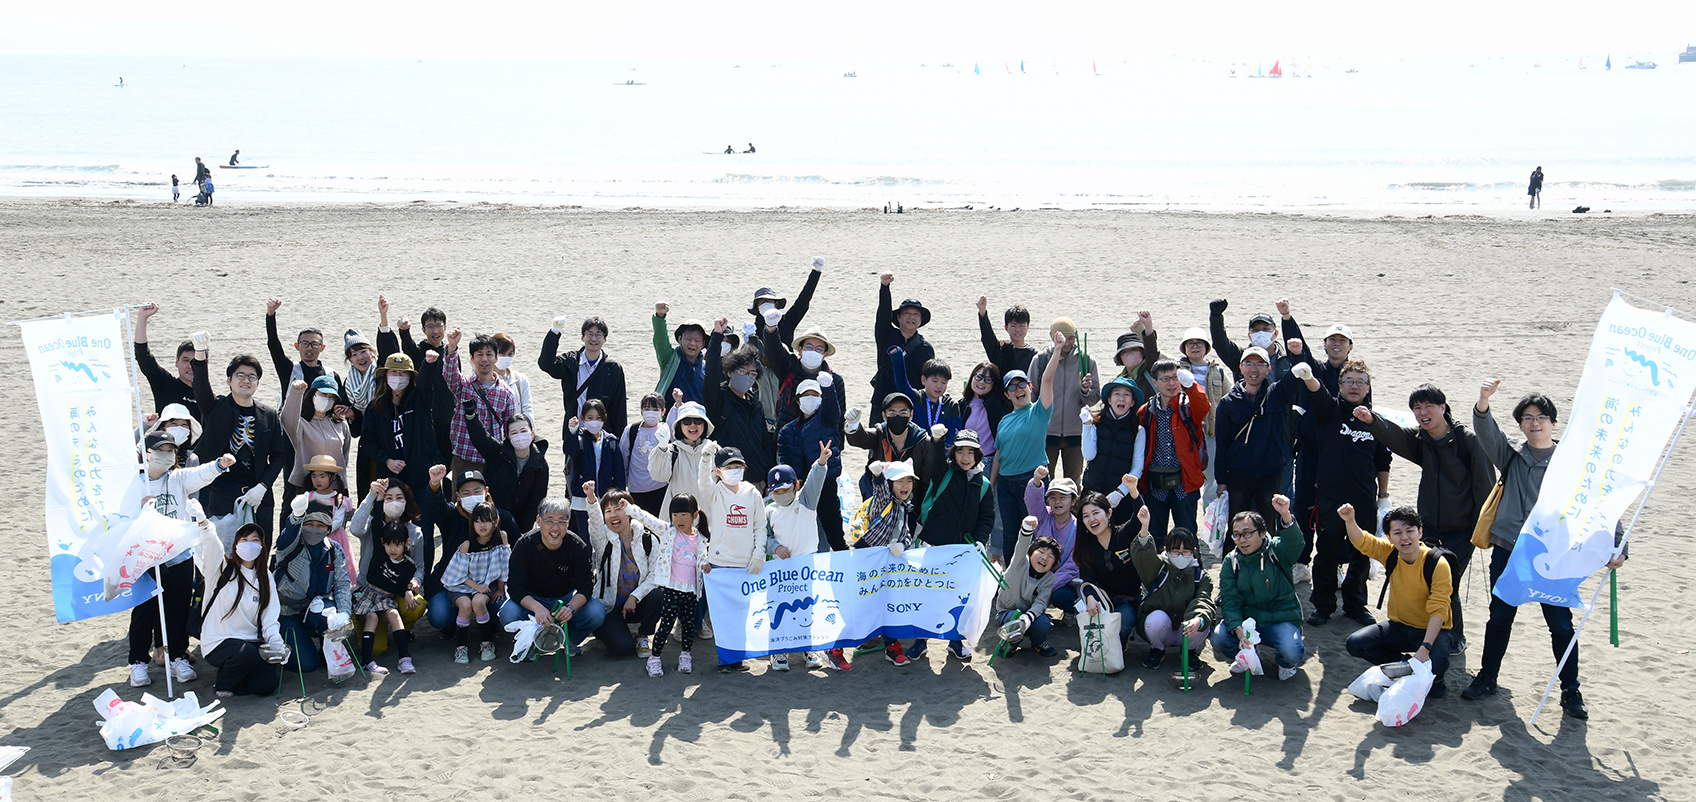 片瀬東浜海岸でビーチ清掃活動に参加した人々の集合写真